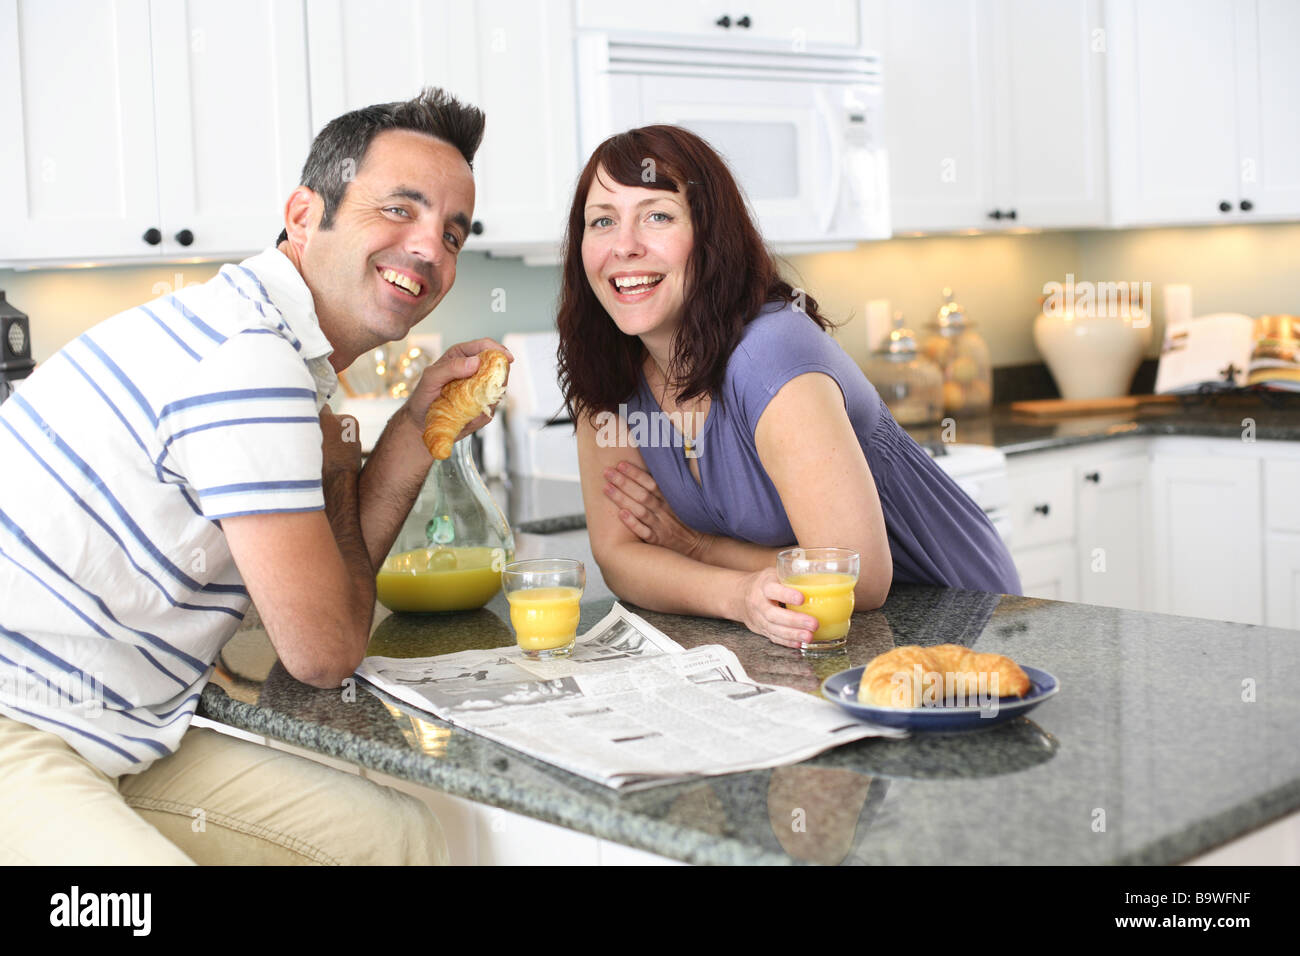 Couple having breakfast in kitchen Stock Photo